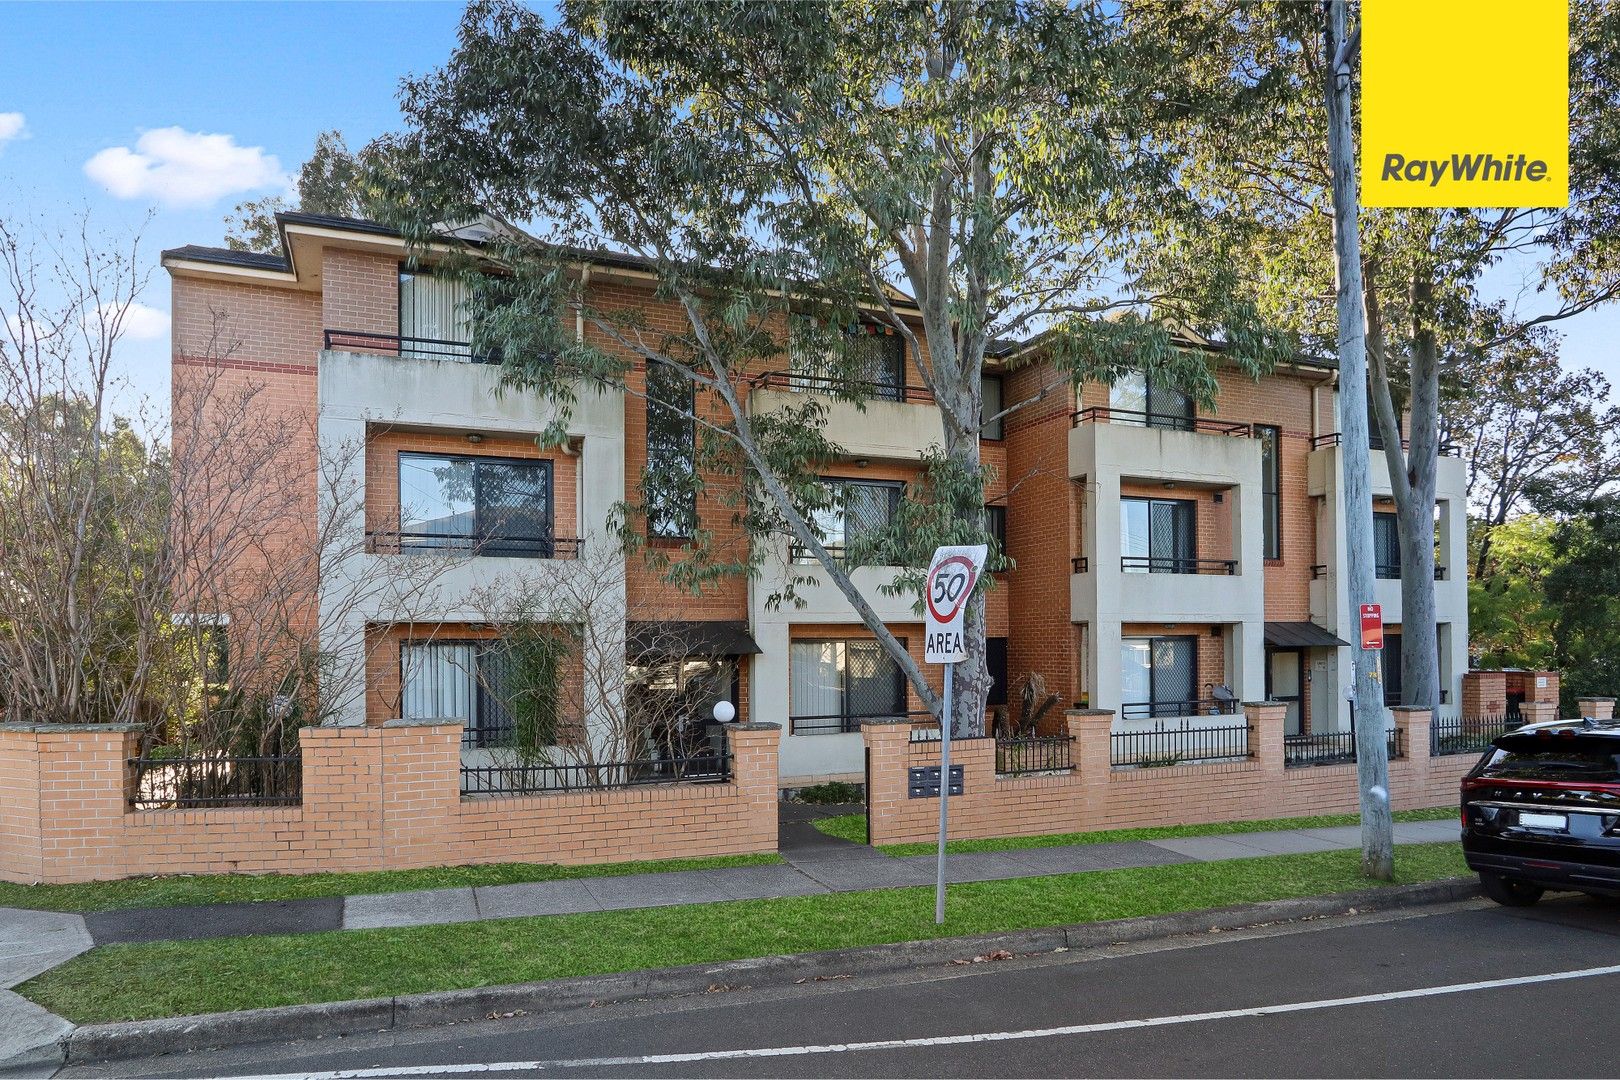 2 bedrooms Apartment / Unit / Flat in 2/12-14 Mombri Street MERRYLANDS NSW, 2160